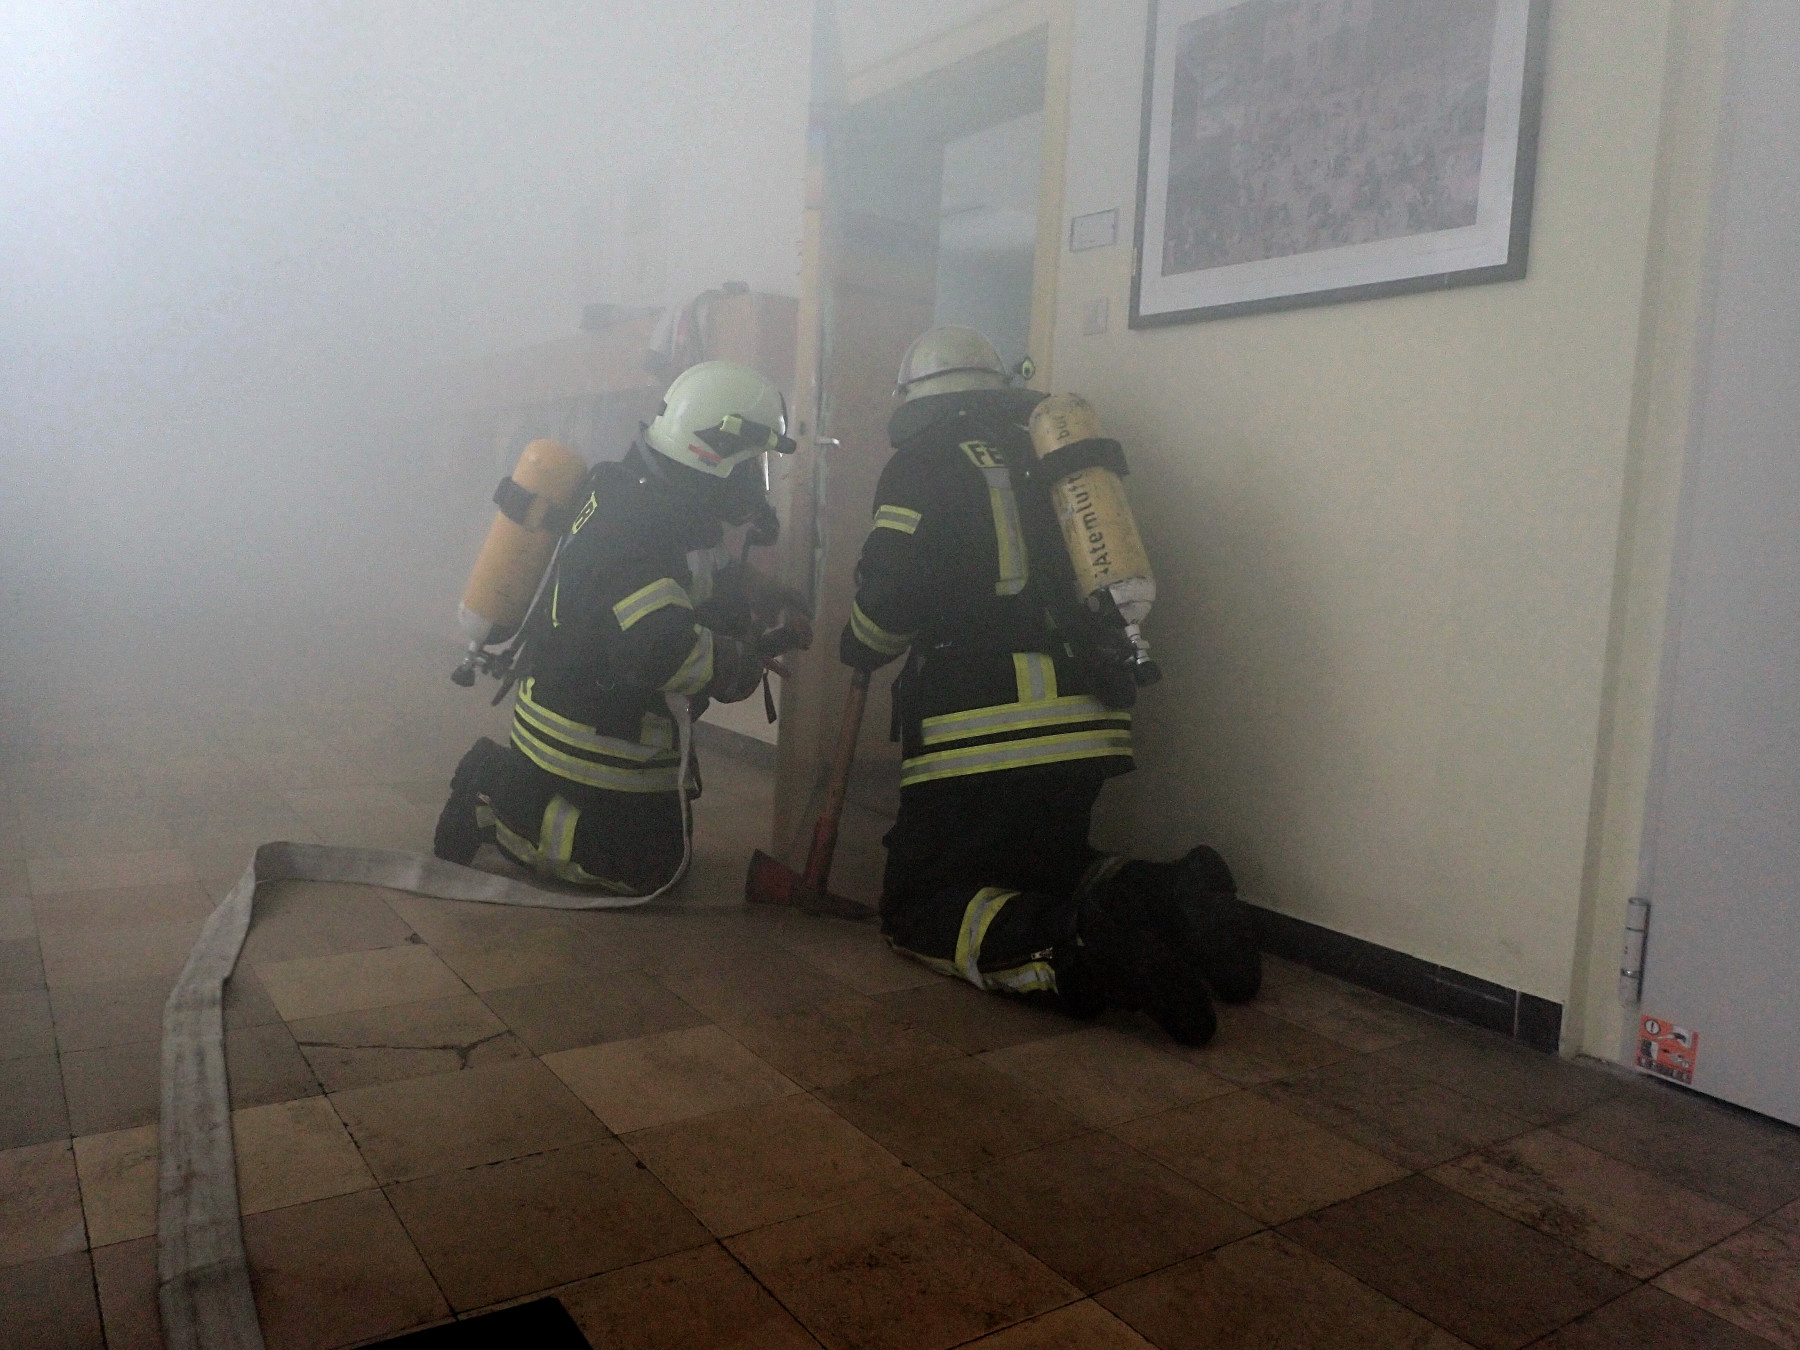 Bild 3: Unter Atemschutz wurden durch den Angriffstrupp die verrauchten Räume kontrolliert, ob sich noch weitere Personen im Gebäude befinden. (Foto M.Lemgen)